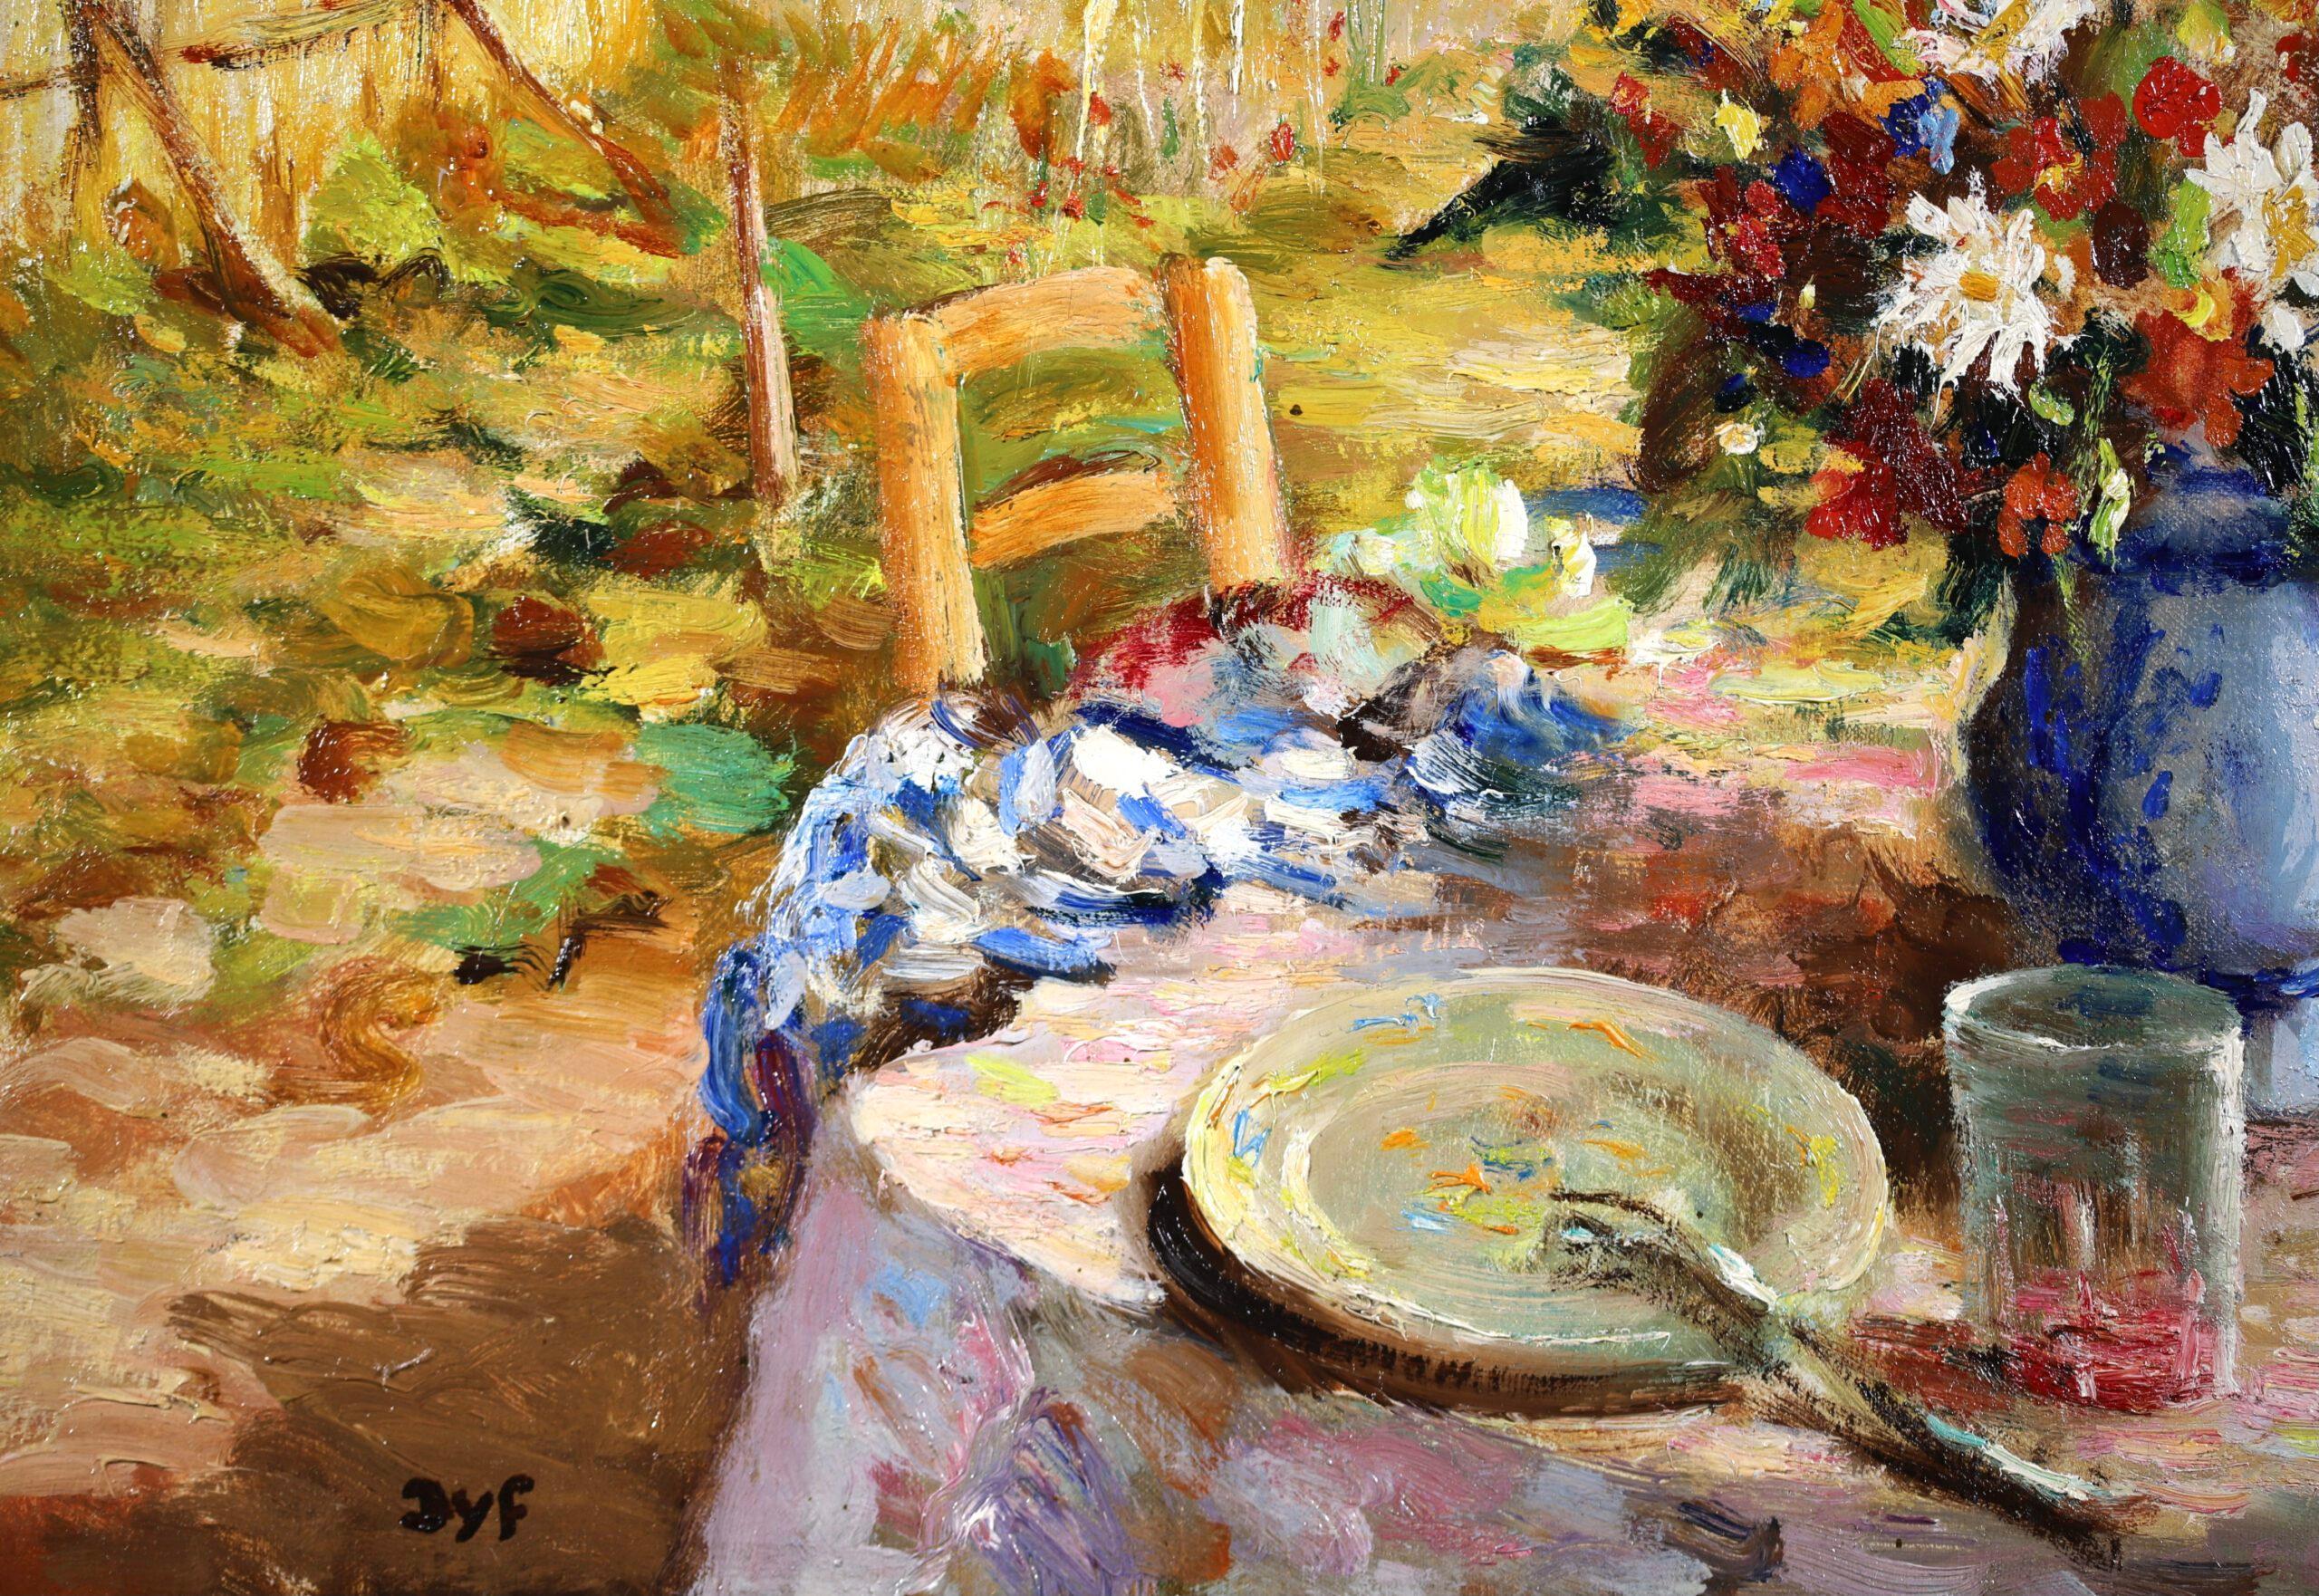 Le Petit Dejeuner - Post Impressionist Landscape Oil Painting by Marcel Dyf For Sale 3